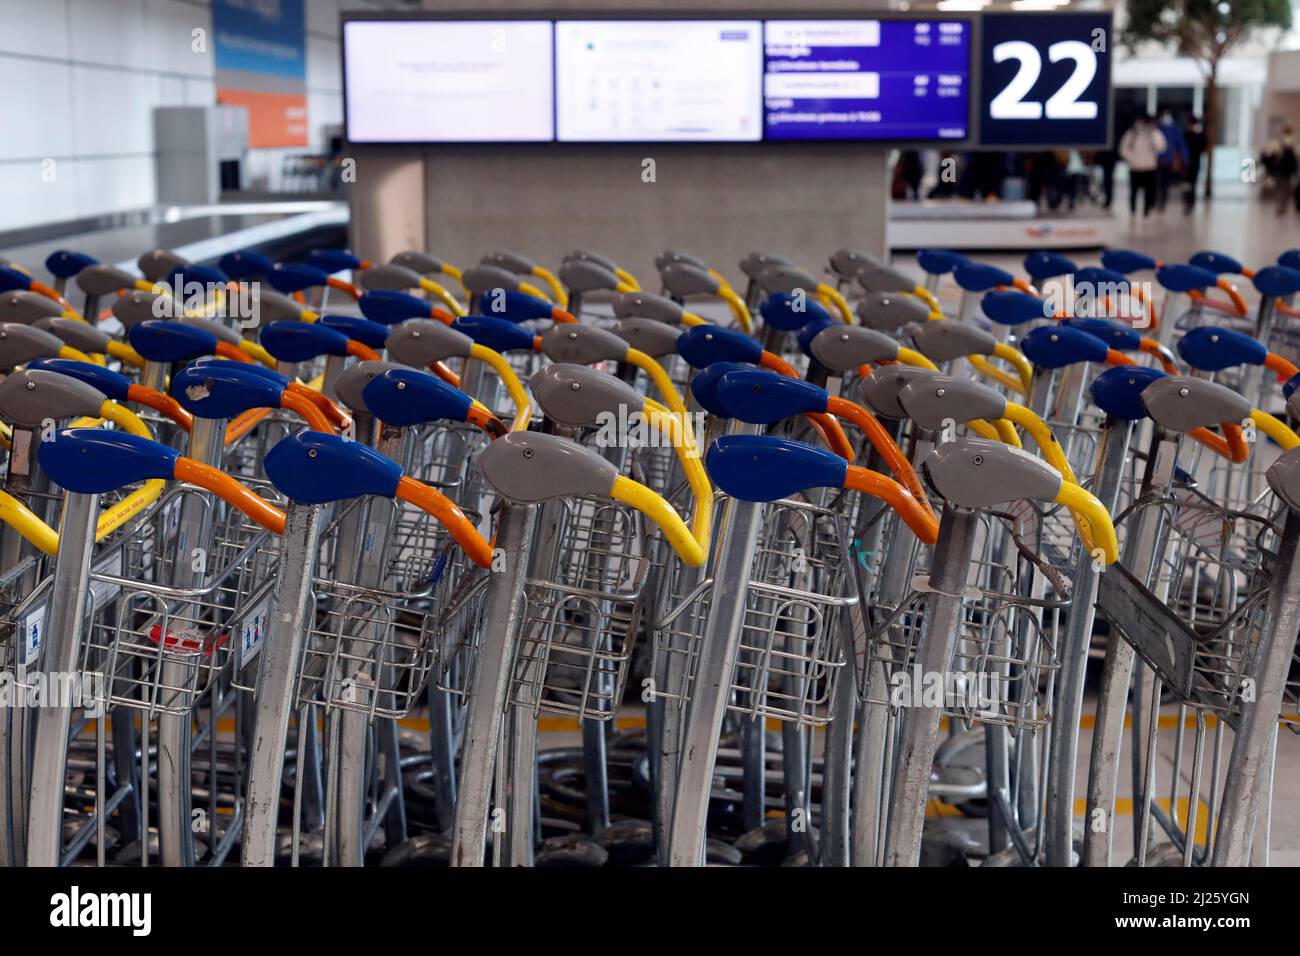 Aeroporto Charles de Gaulle. Carrelli per bagagli nell'area arrivi. Foto Stock